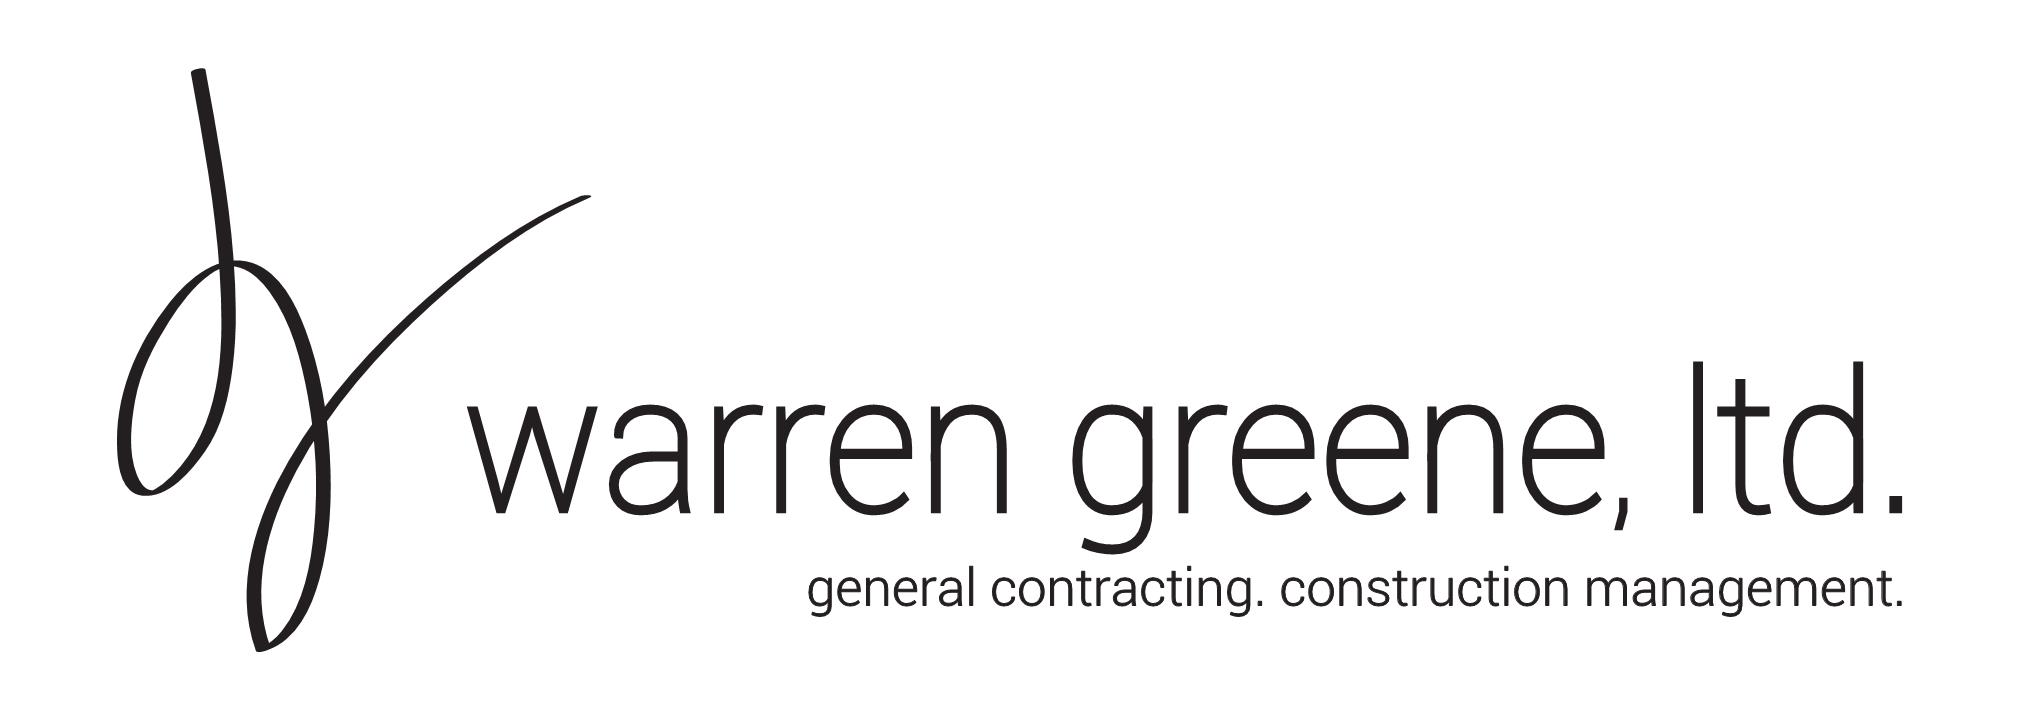 Warren Greene Ltd. 